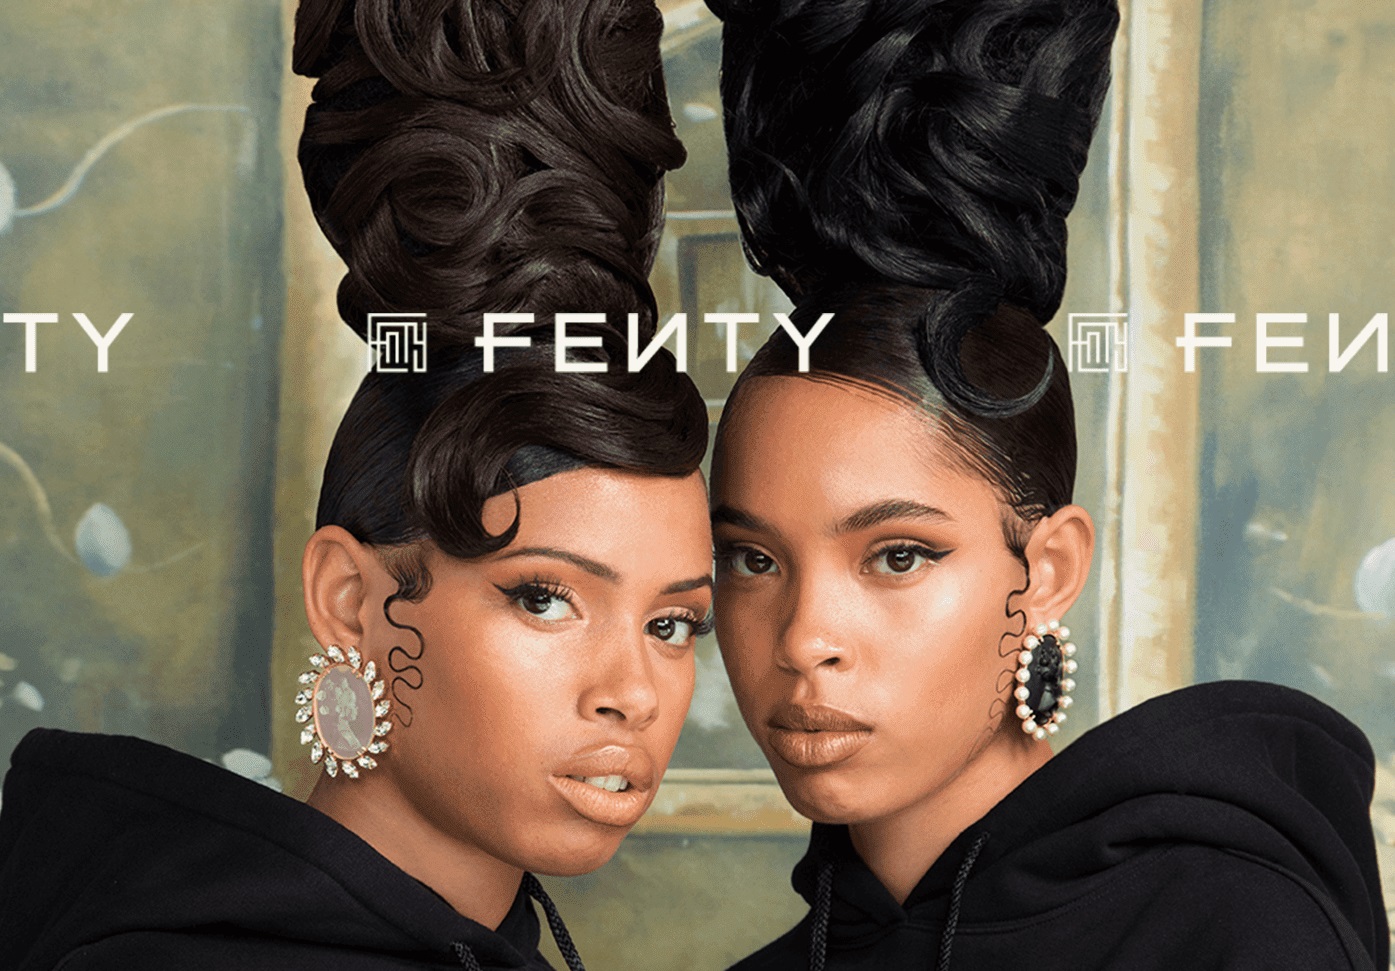 Rihanna's Fenty Fashion Line Unveiled Its The Cameo Jewelry